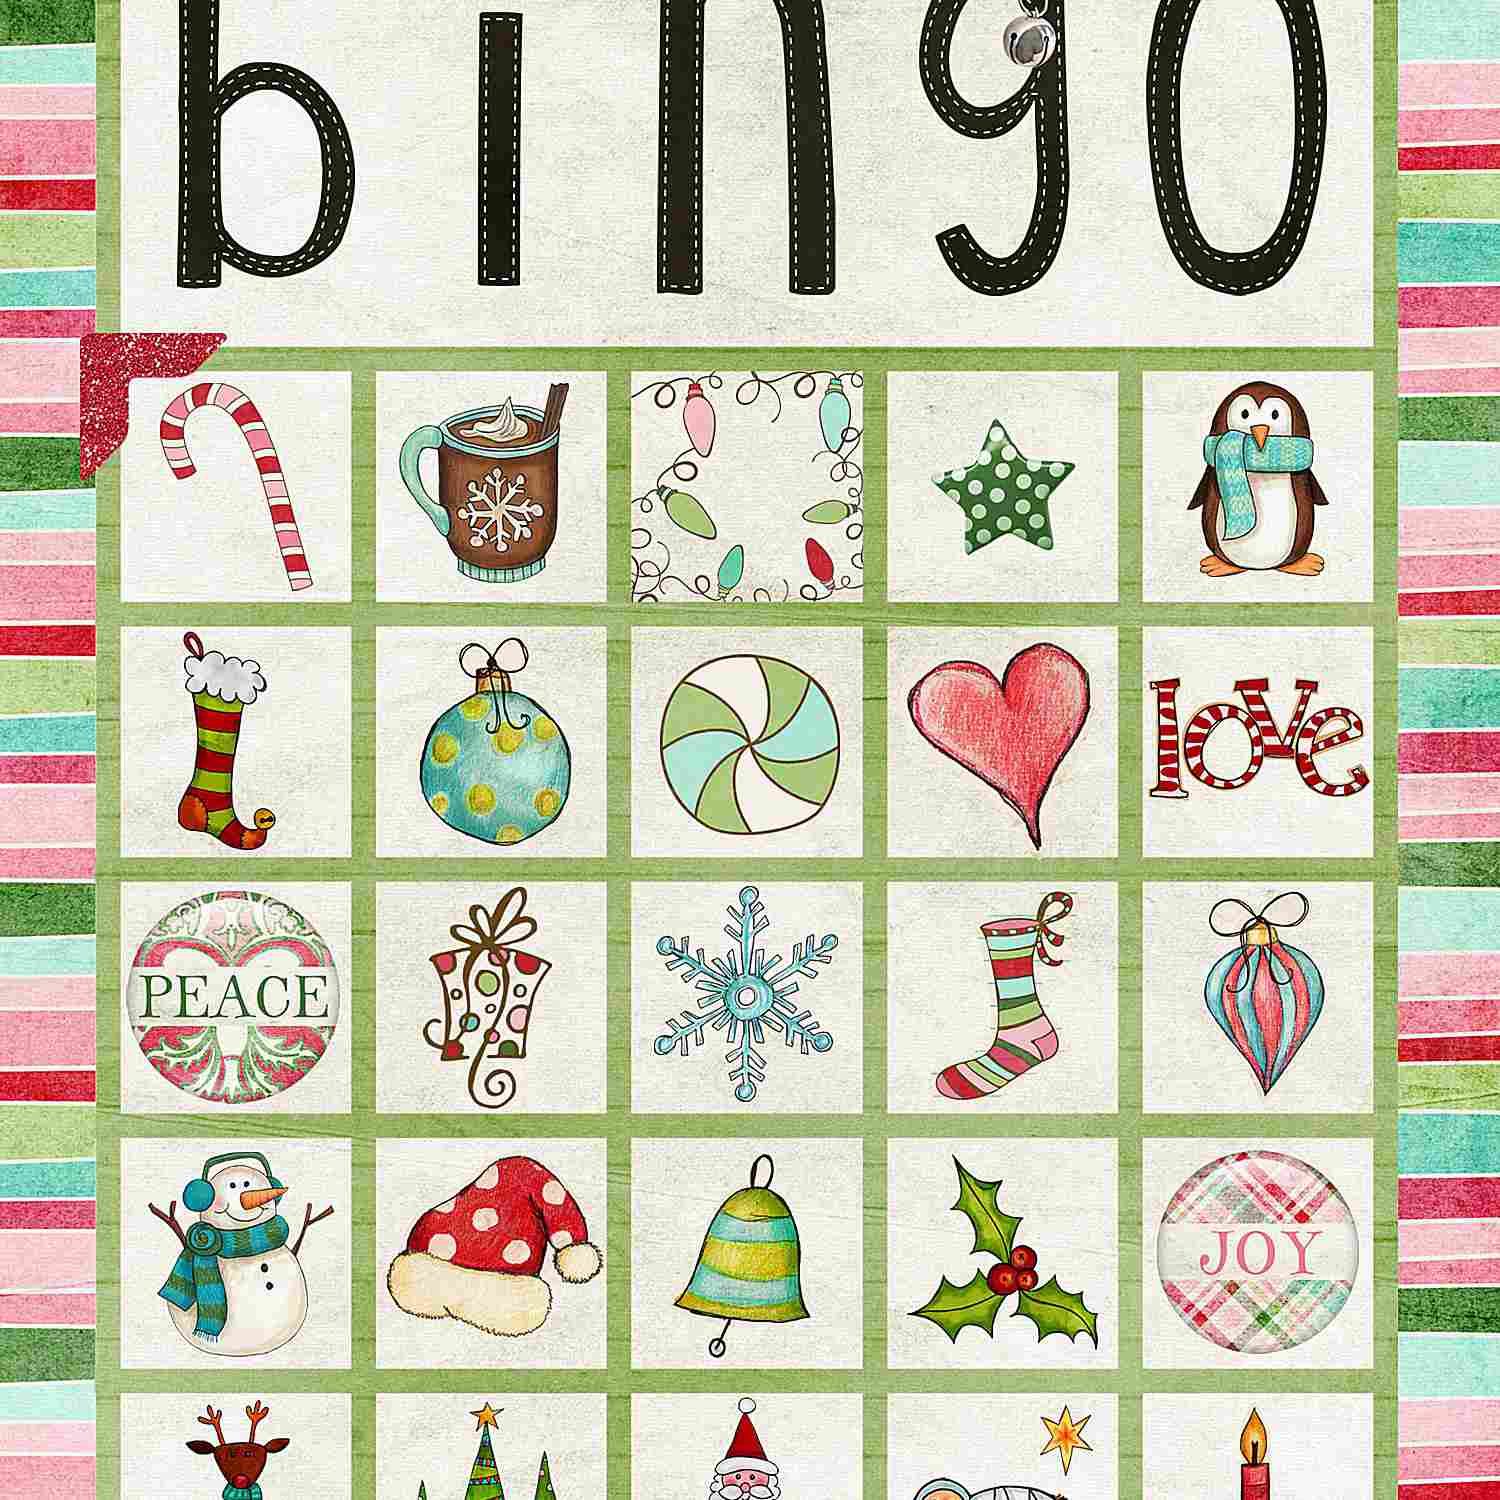 11 Free, Printable Christmas Bingo Games For The Family - Free Printable Christmas Bingo Cards